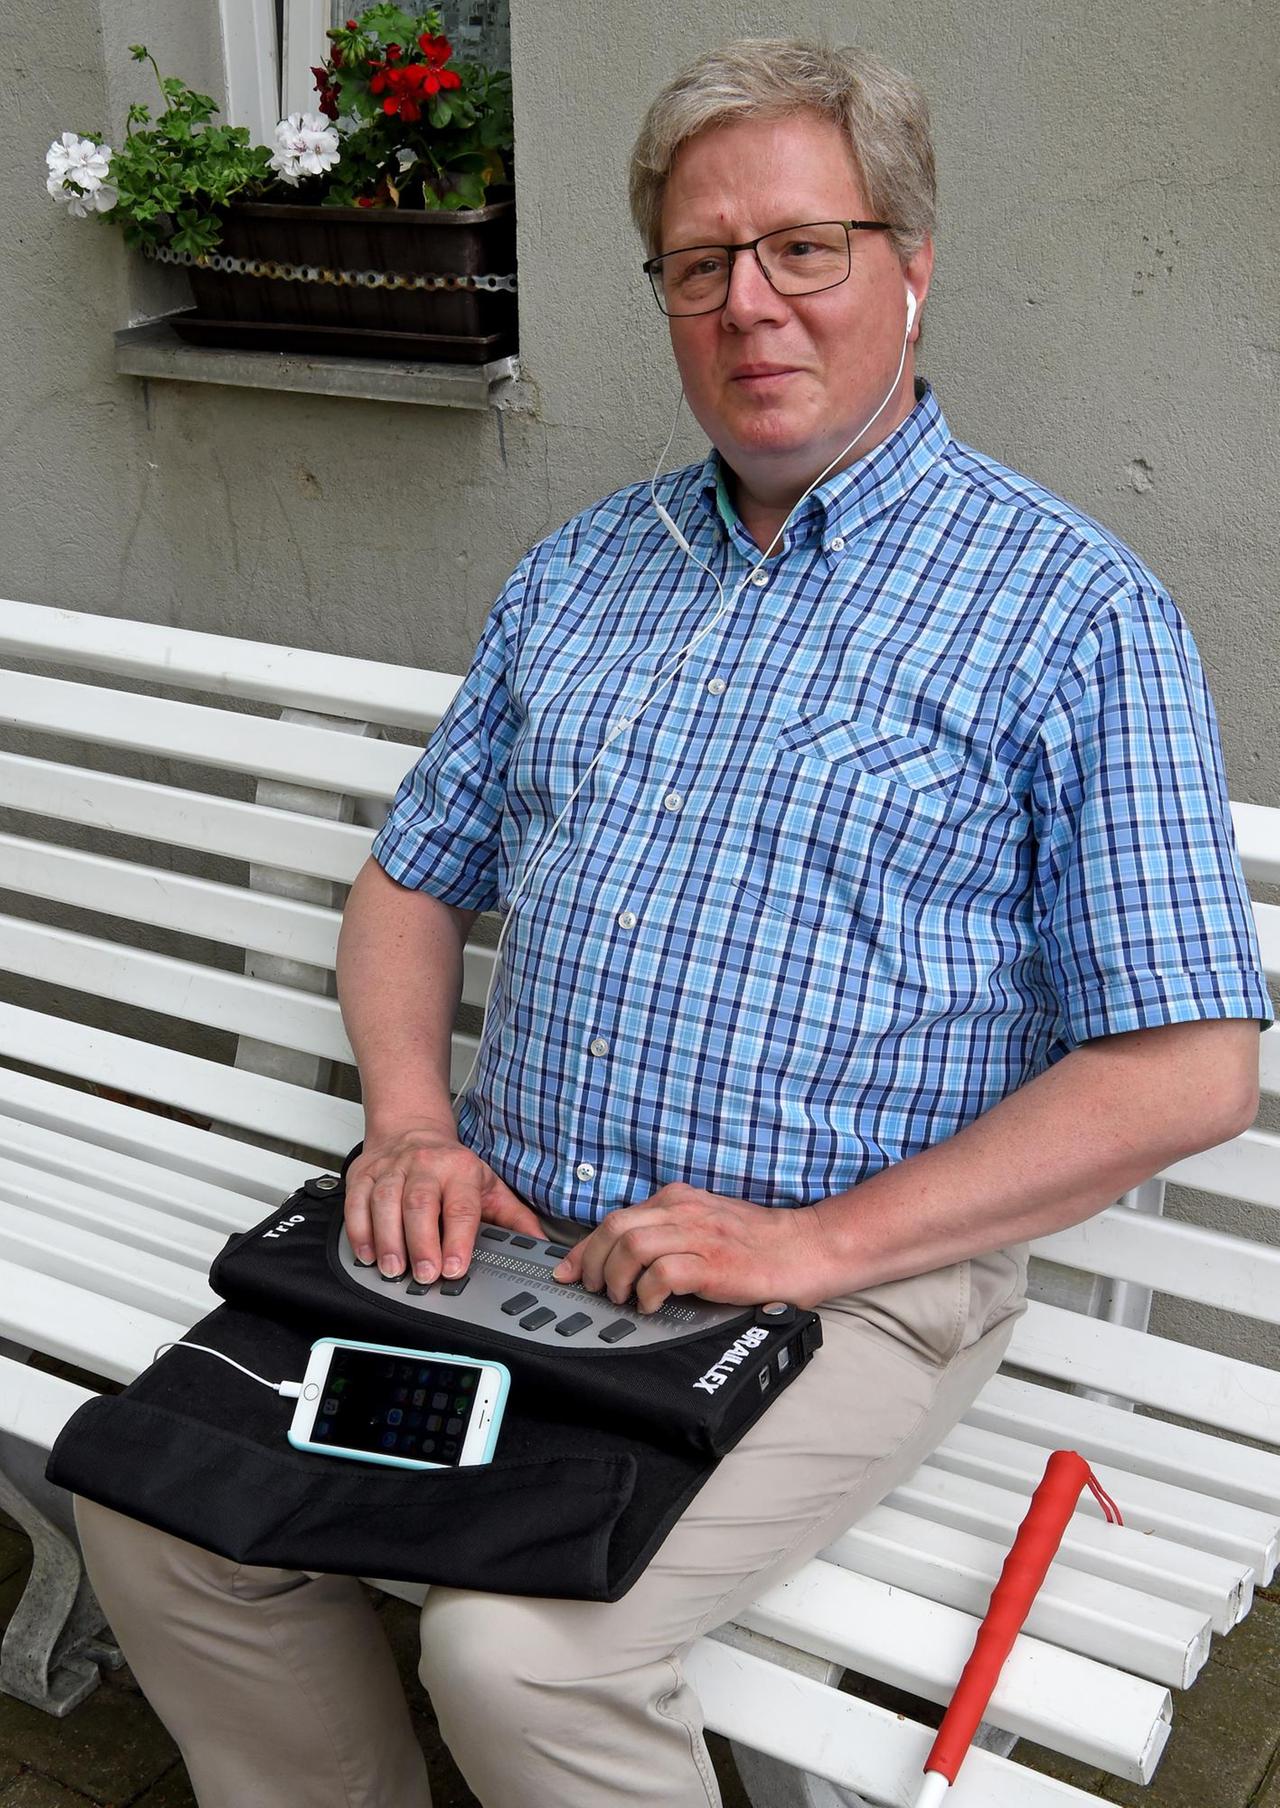 Thomas Kahlisch, Präsidiumsmitglied des Deutschen Blinden- und Sehbehindertenverbandes (DBSV), bedient sein Smartphone mit einer Braillezeile

